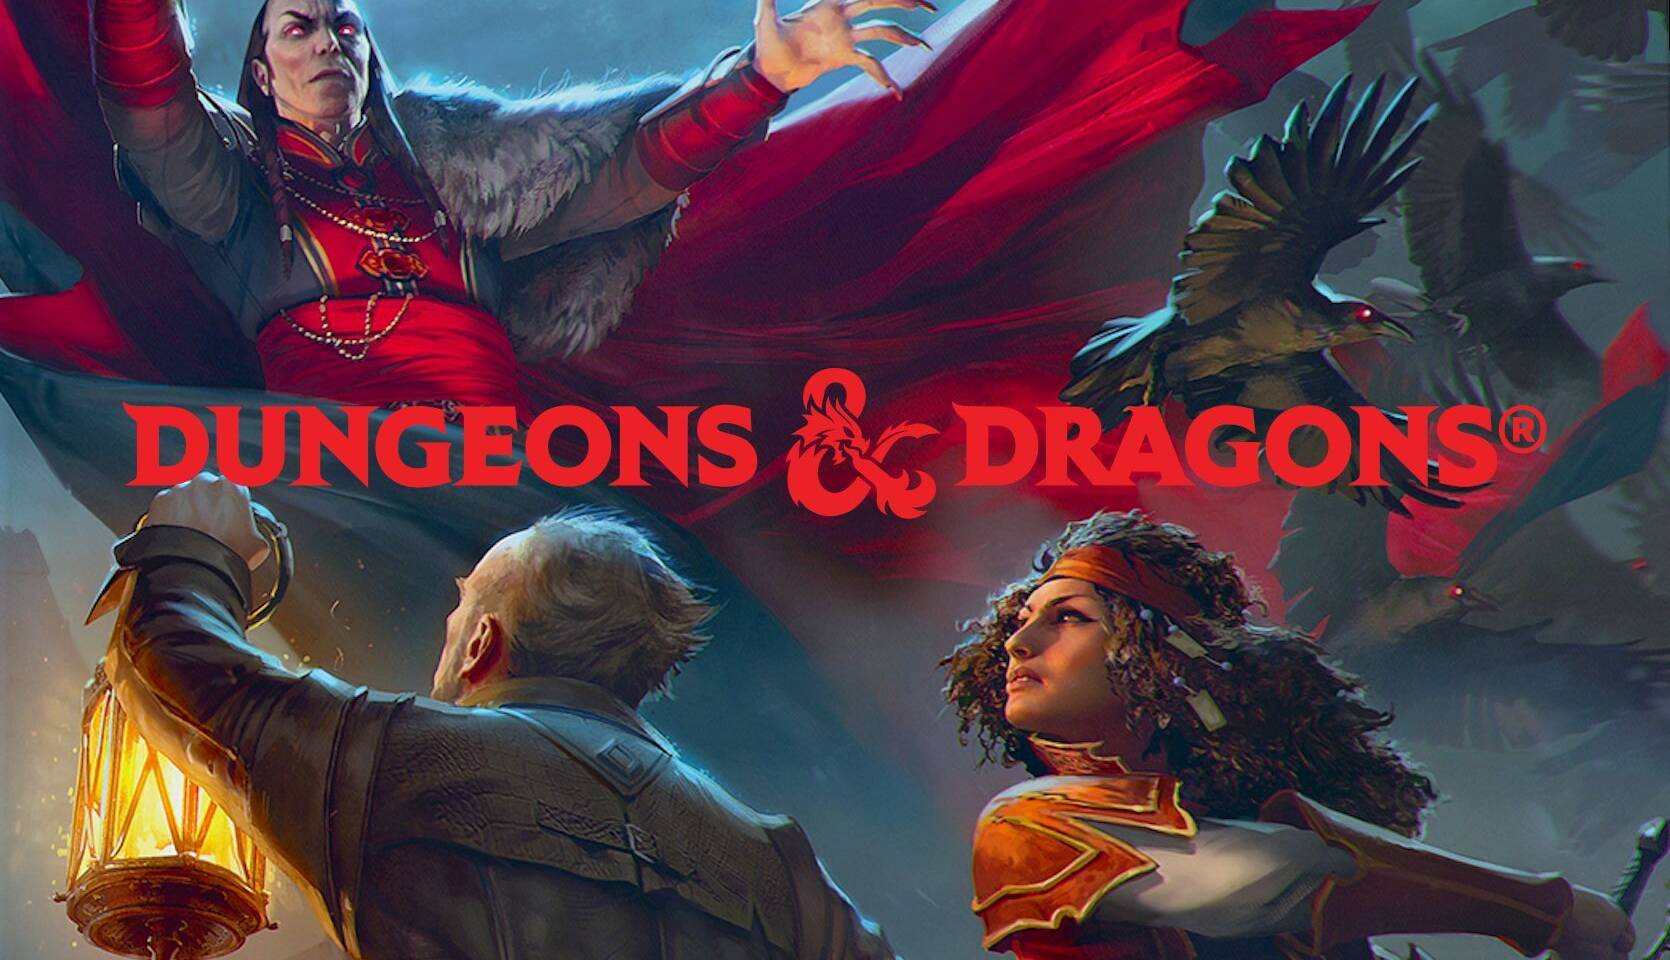 Dungeons & Dragons se expandirá en España y Latinoamérica con nuevos